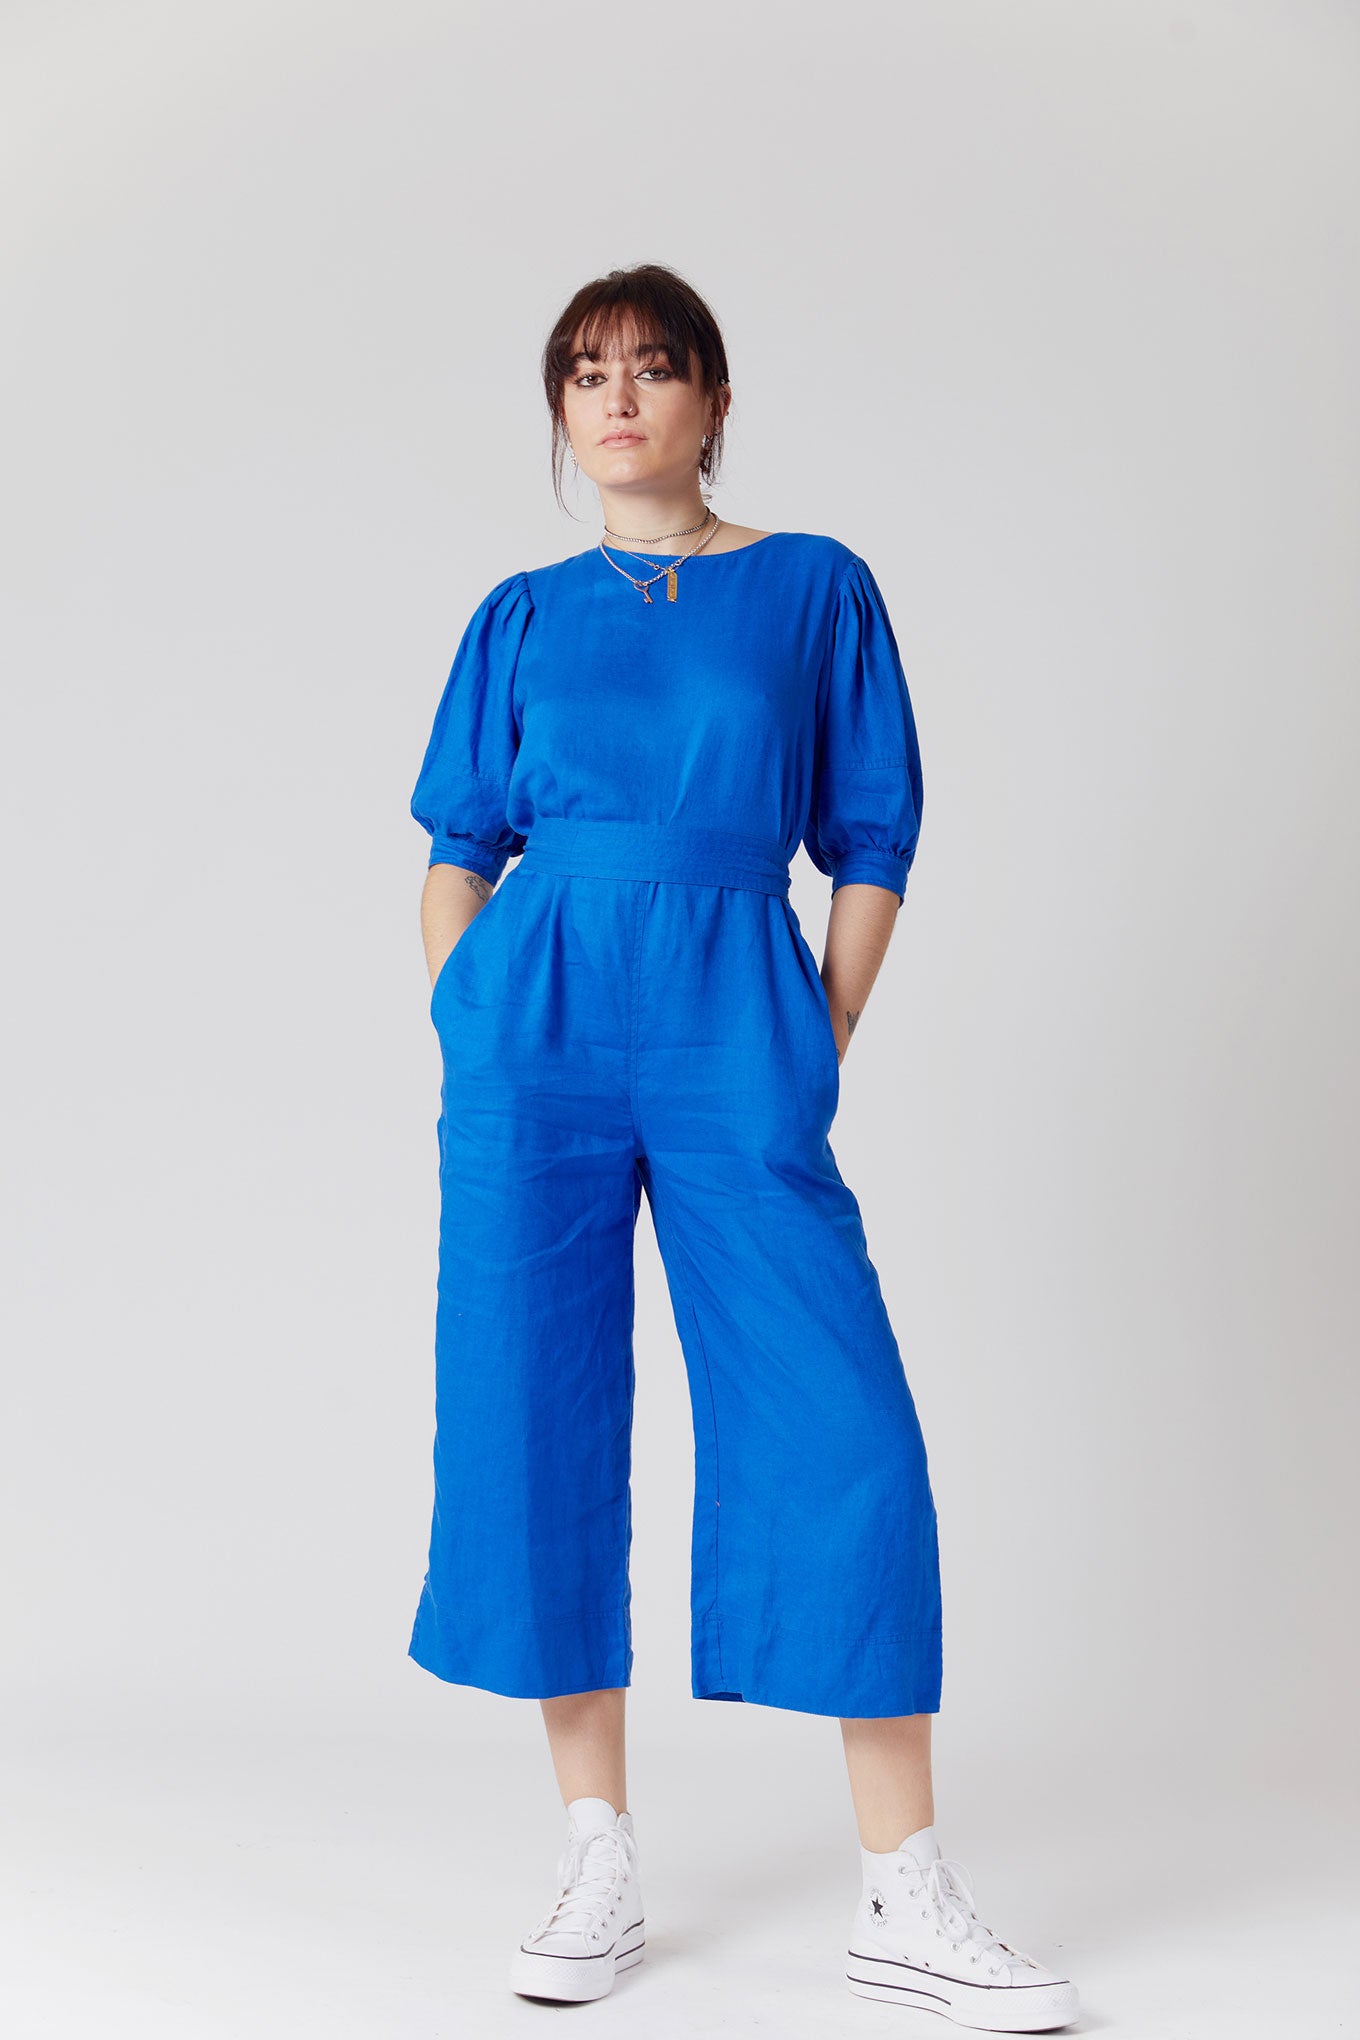 FAYE Organic Linen Jumpsuit Blue, SIZE 4 / UK 14 / EUR 42